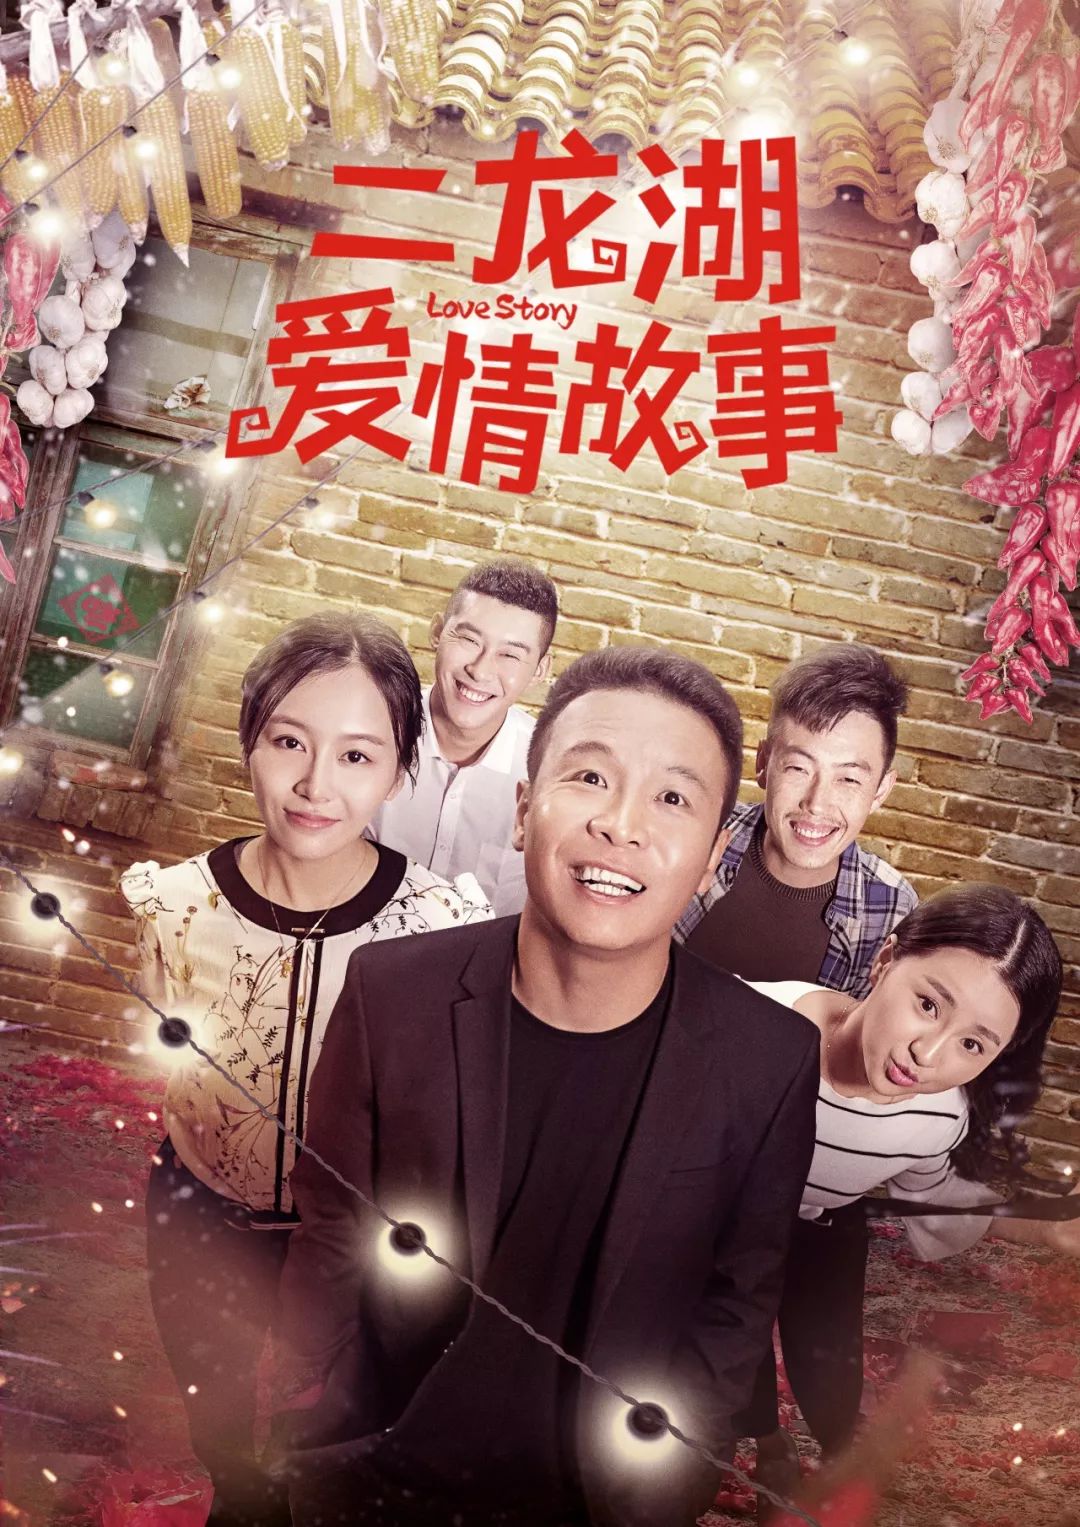 这些中国式肥皂剧,凭什么能拍到10季+?